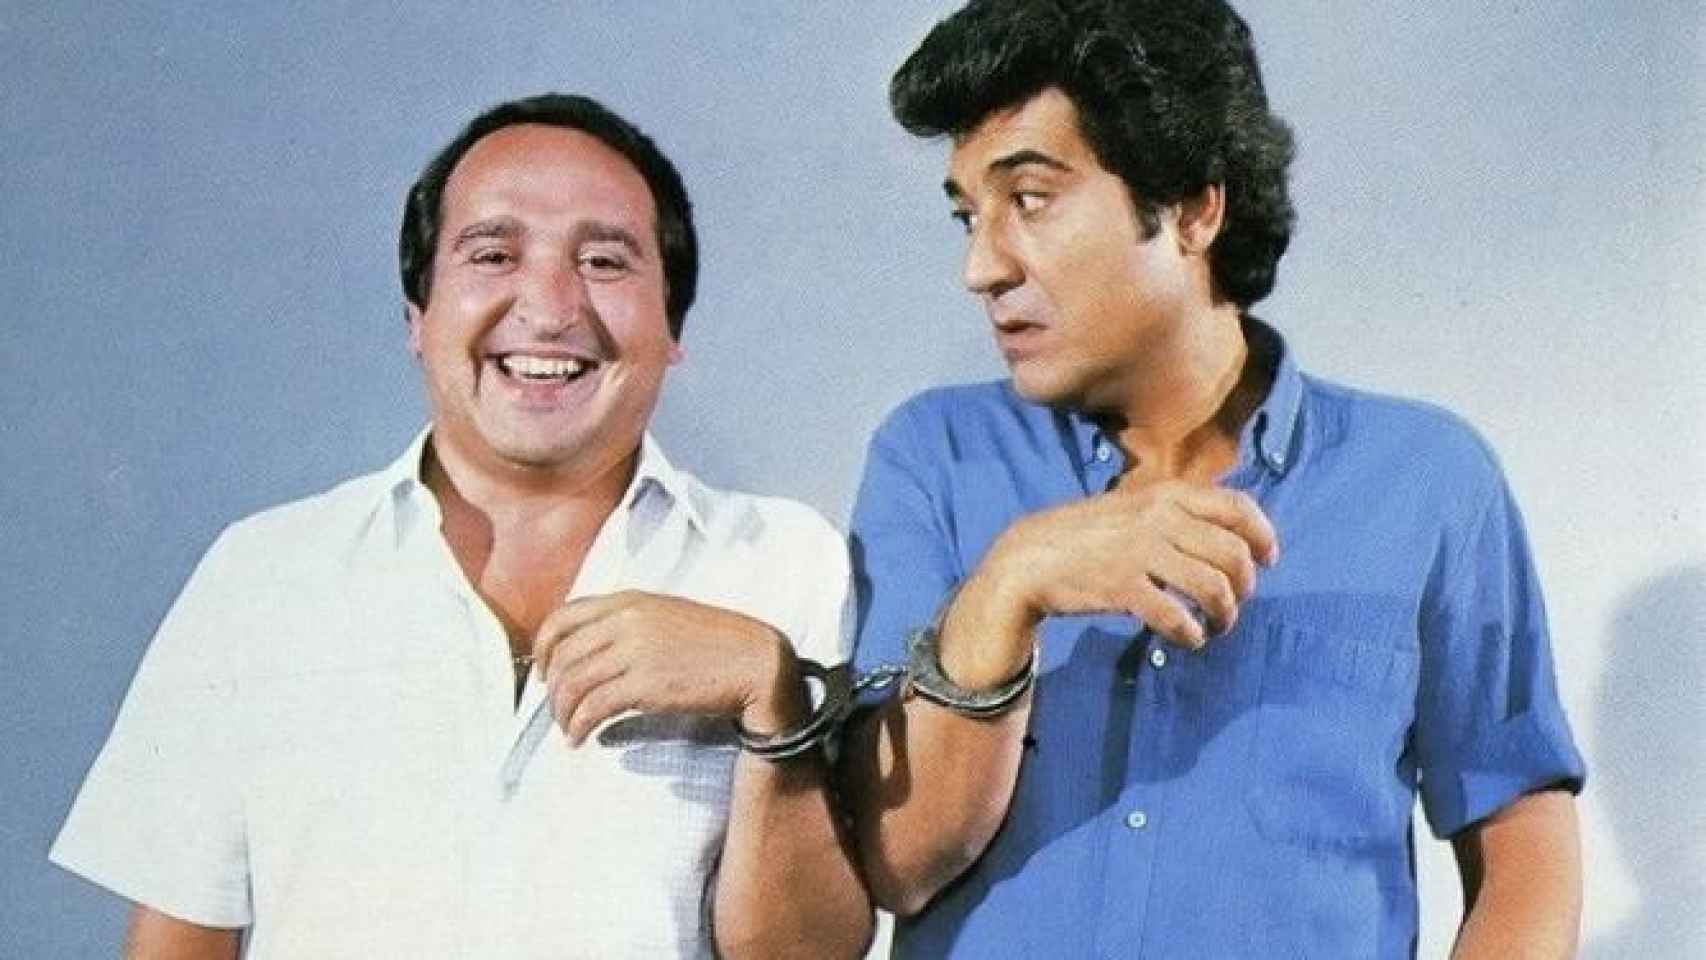 Fernando Esteso y Andrés Pajares, en una foto promocional de época.